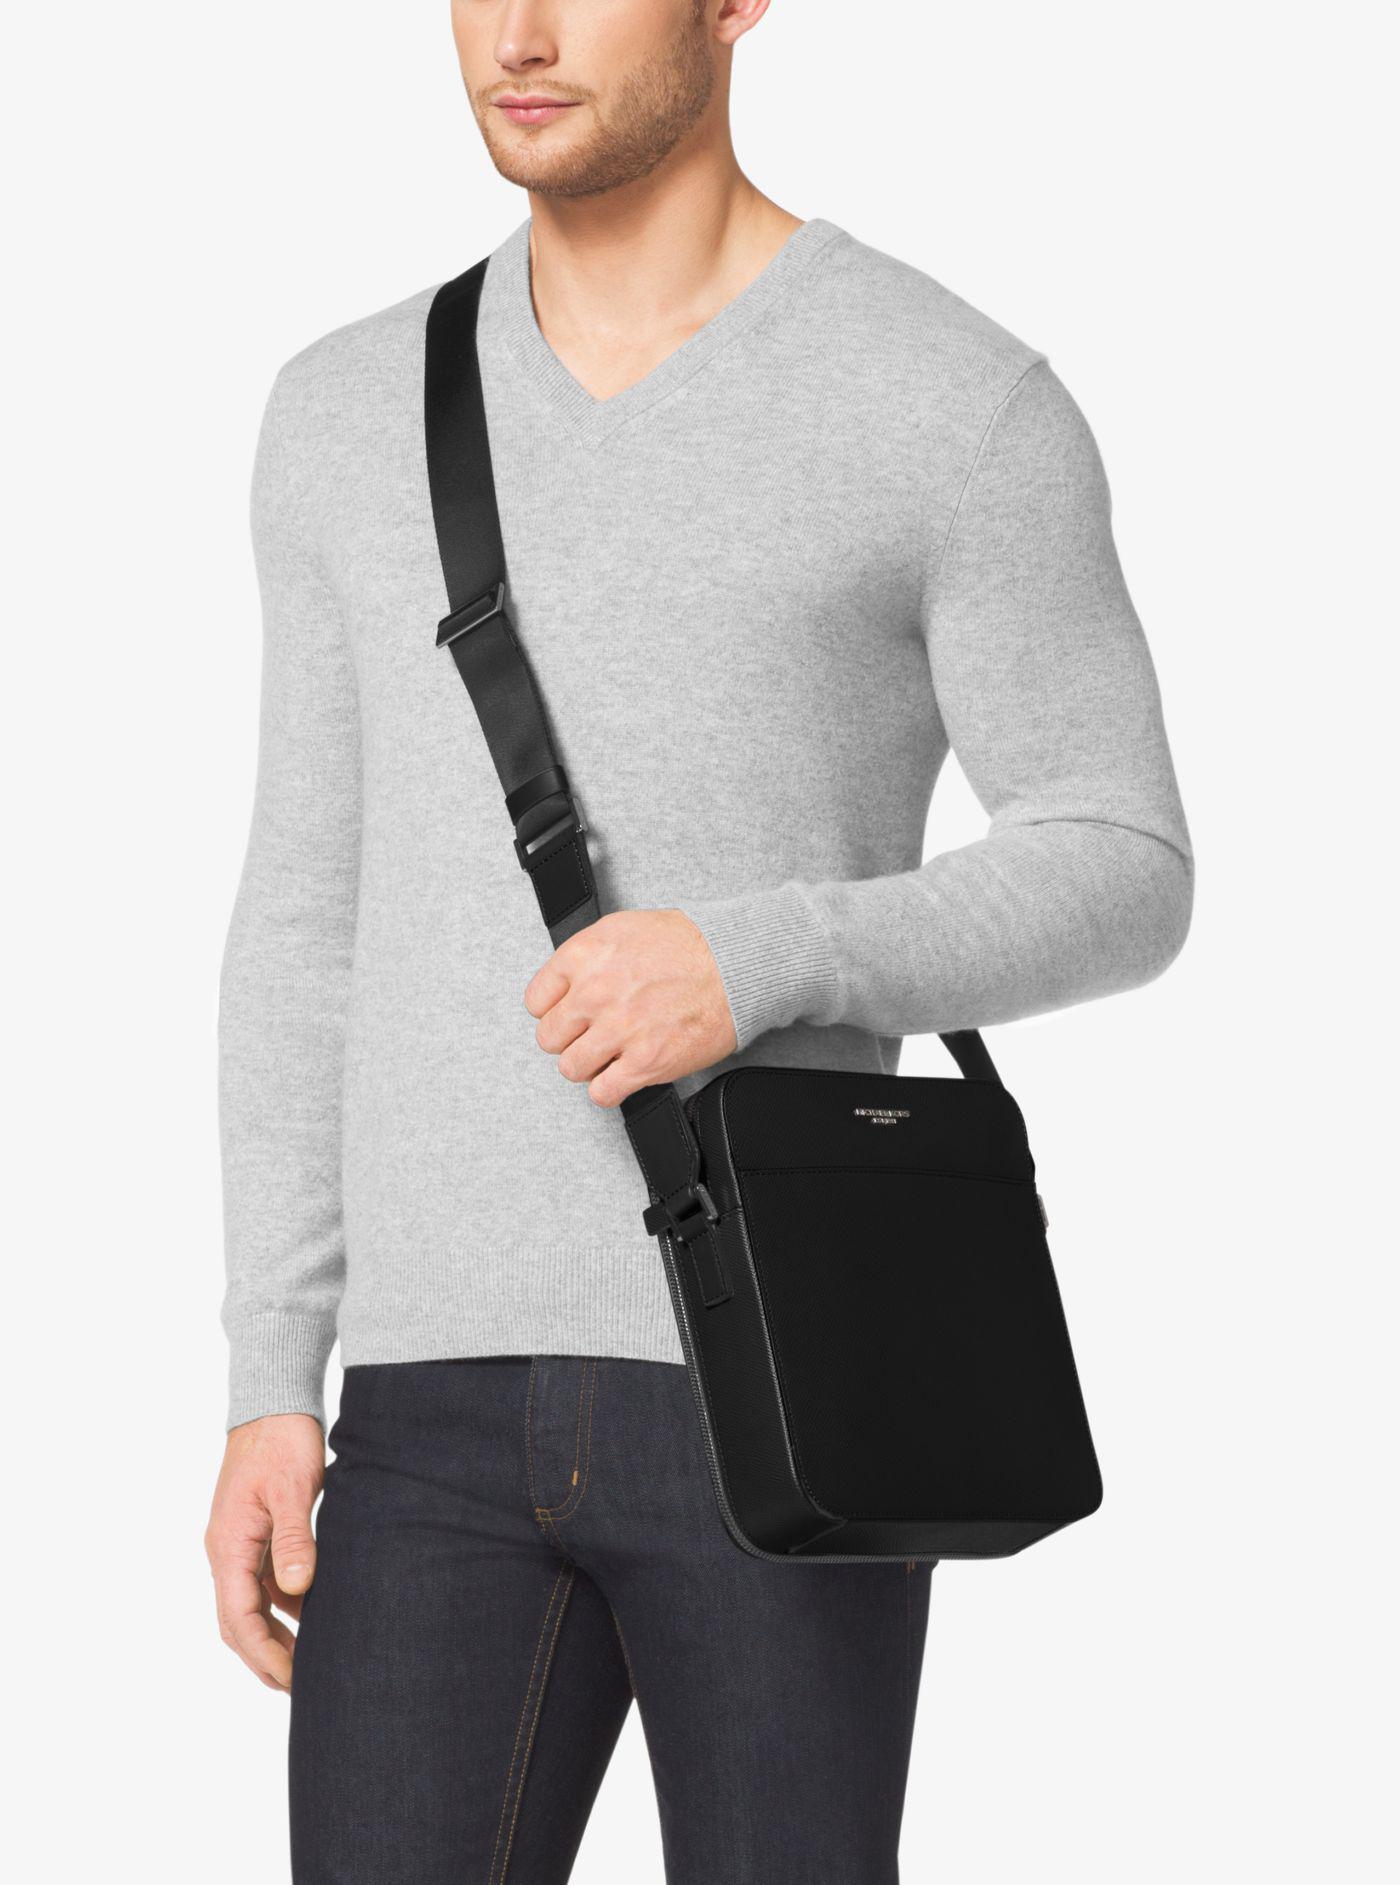 Michael Kors Leather Harrison Flight Bag in Black for Men - Lyst